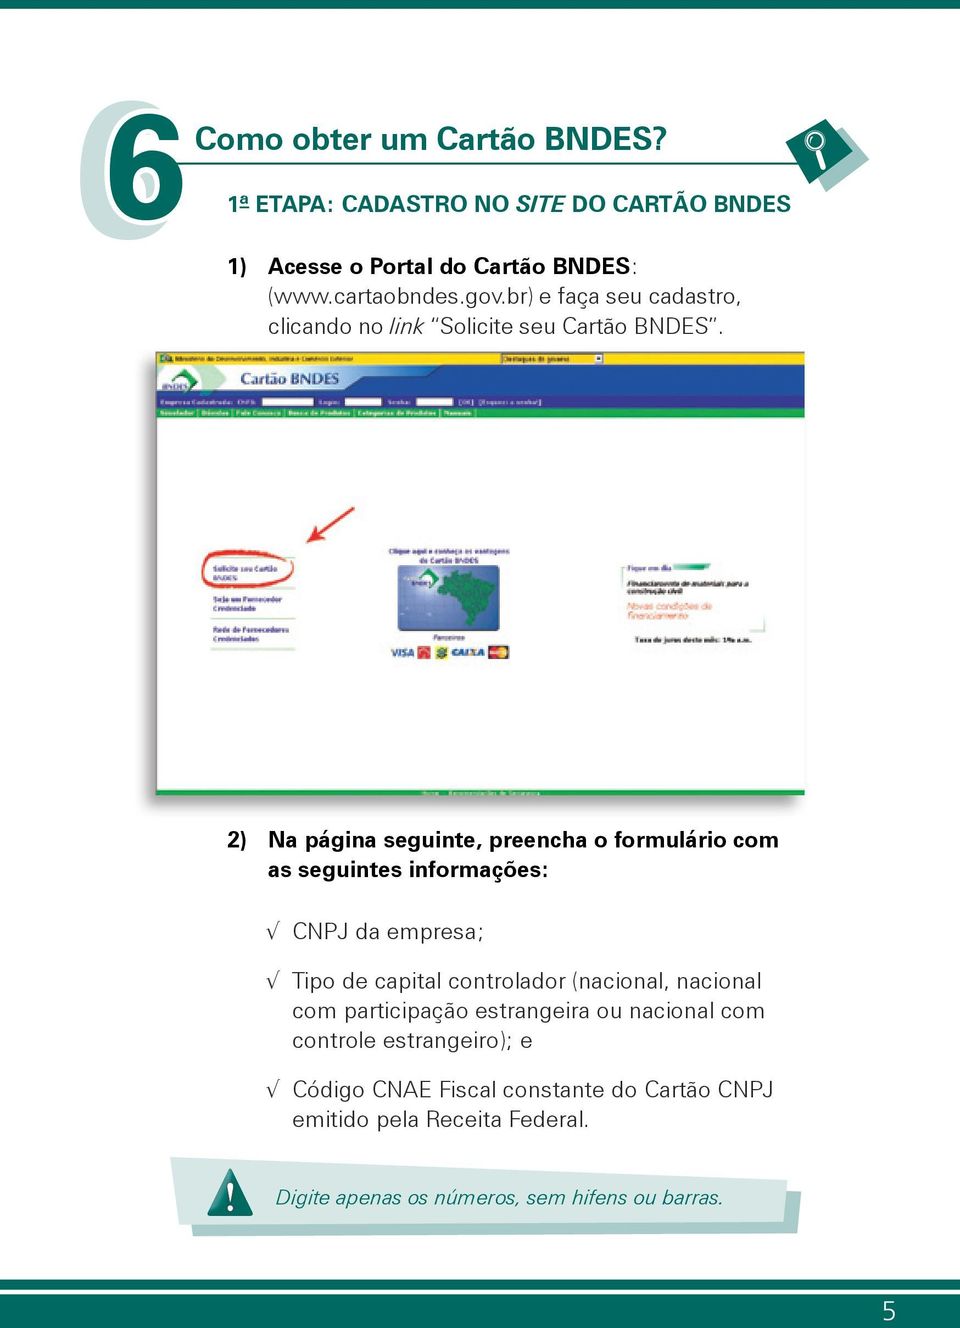 2) Na página seguinte, preencha o formulário com as seguintes informações: CNPJ da empresa; Tipo de capital controlador (nacional,